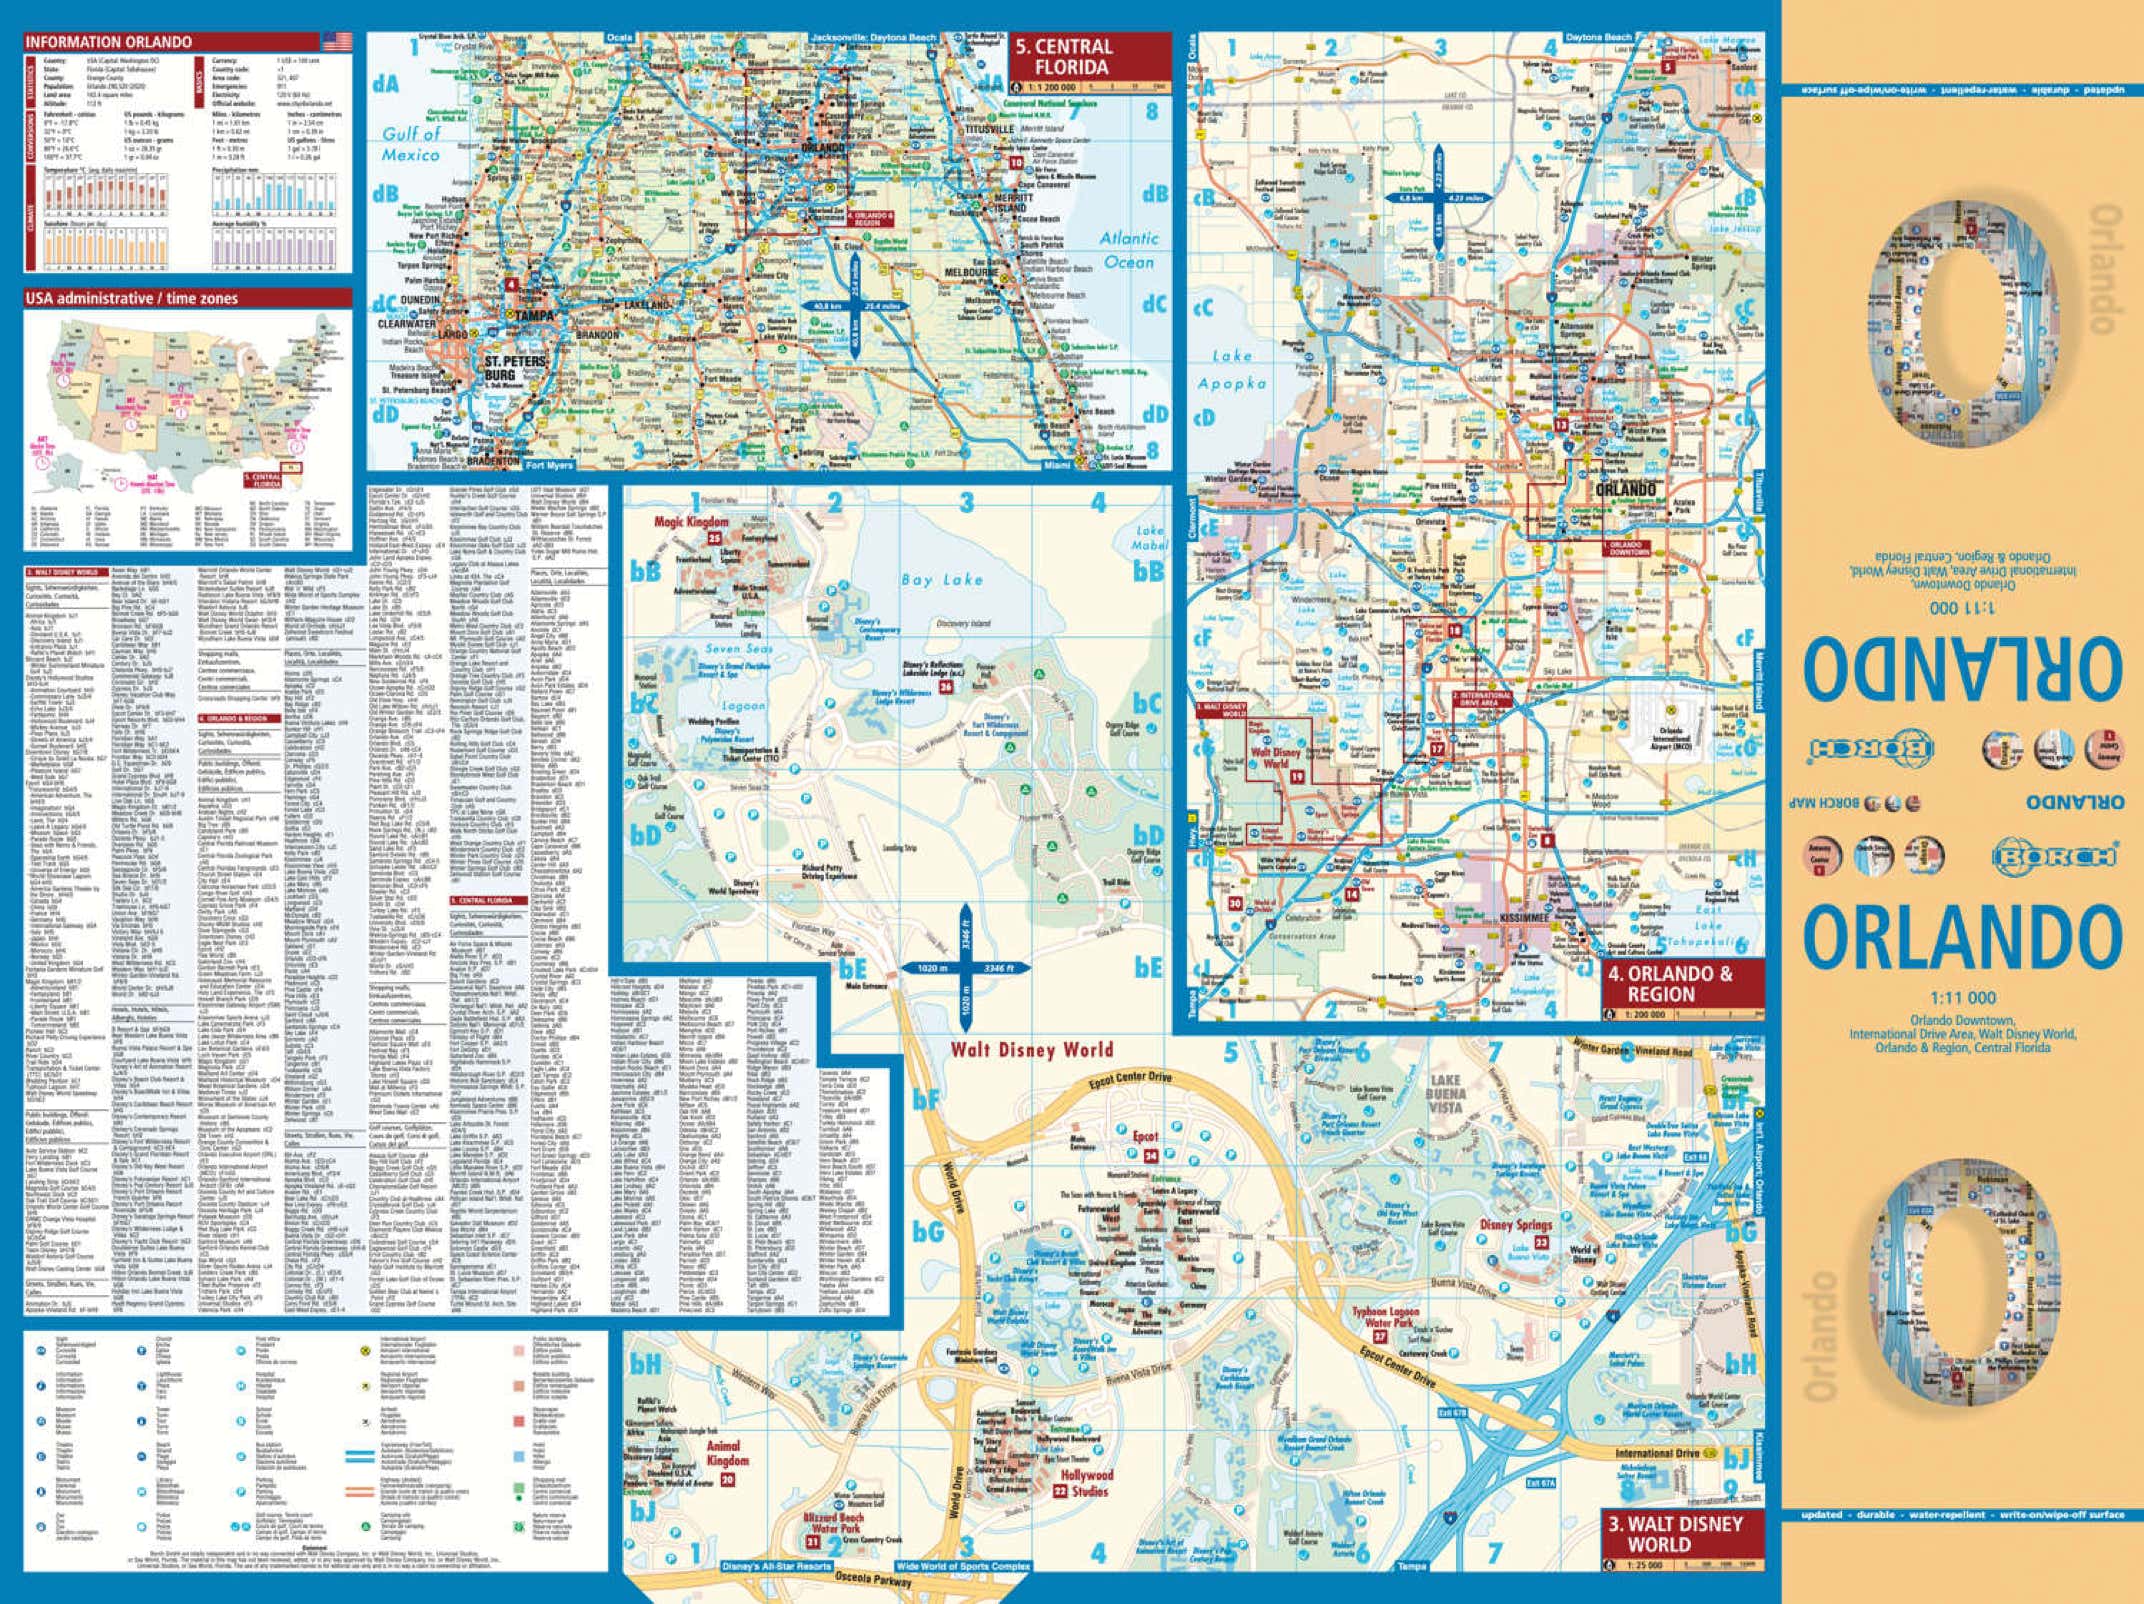 Orlando Florida USA Borch Map - page 1 